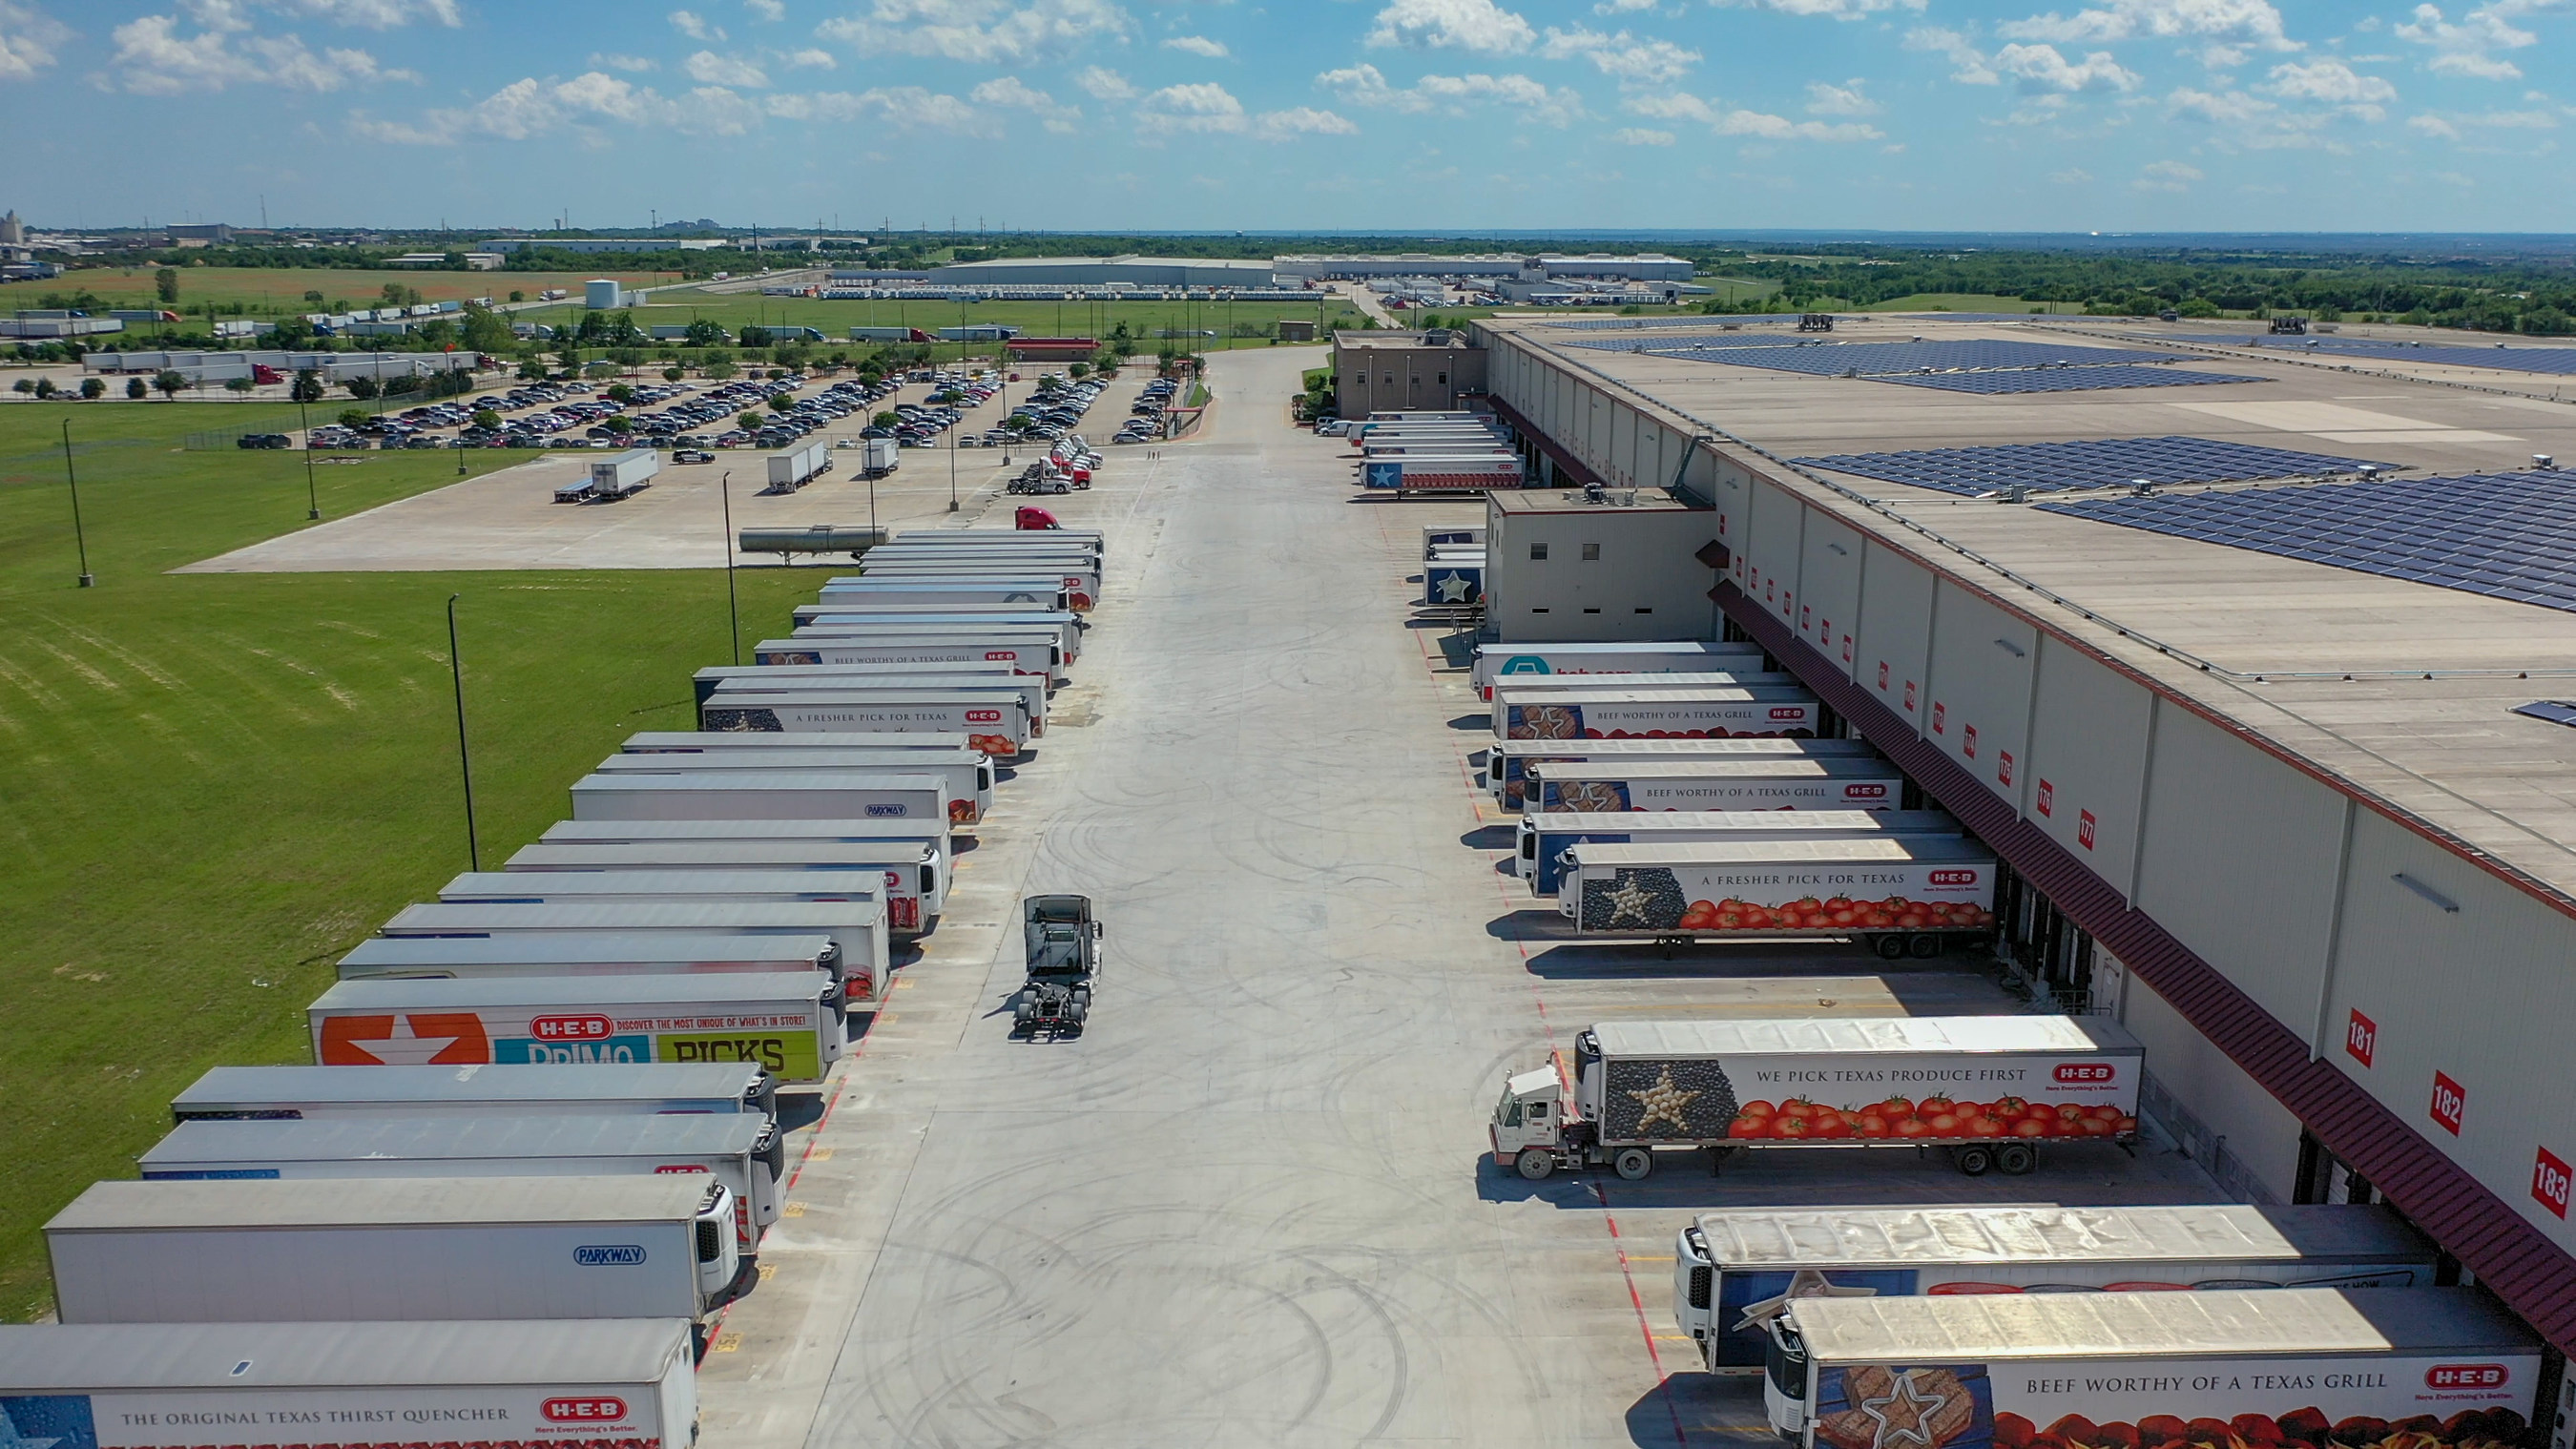 H-E-B distribution center in Temple, TX